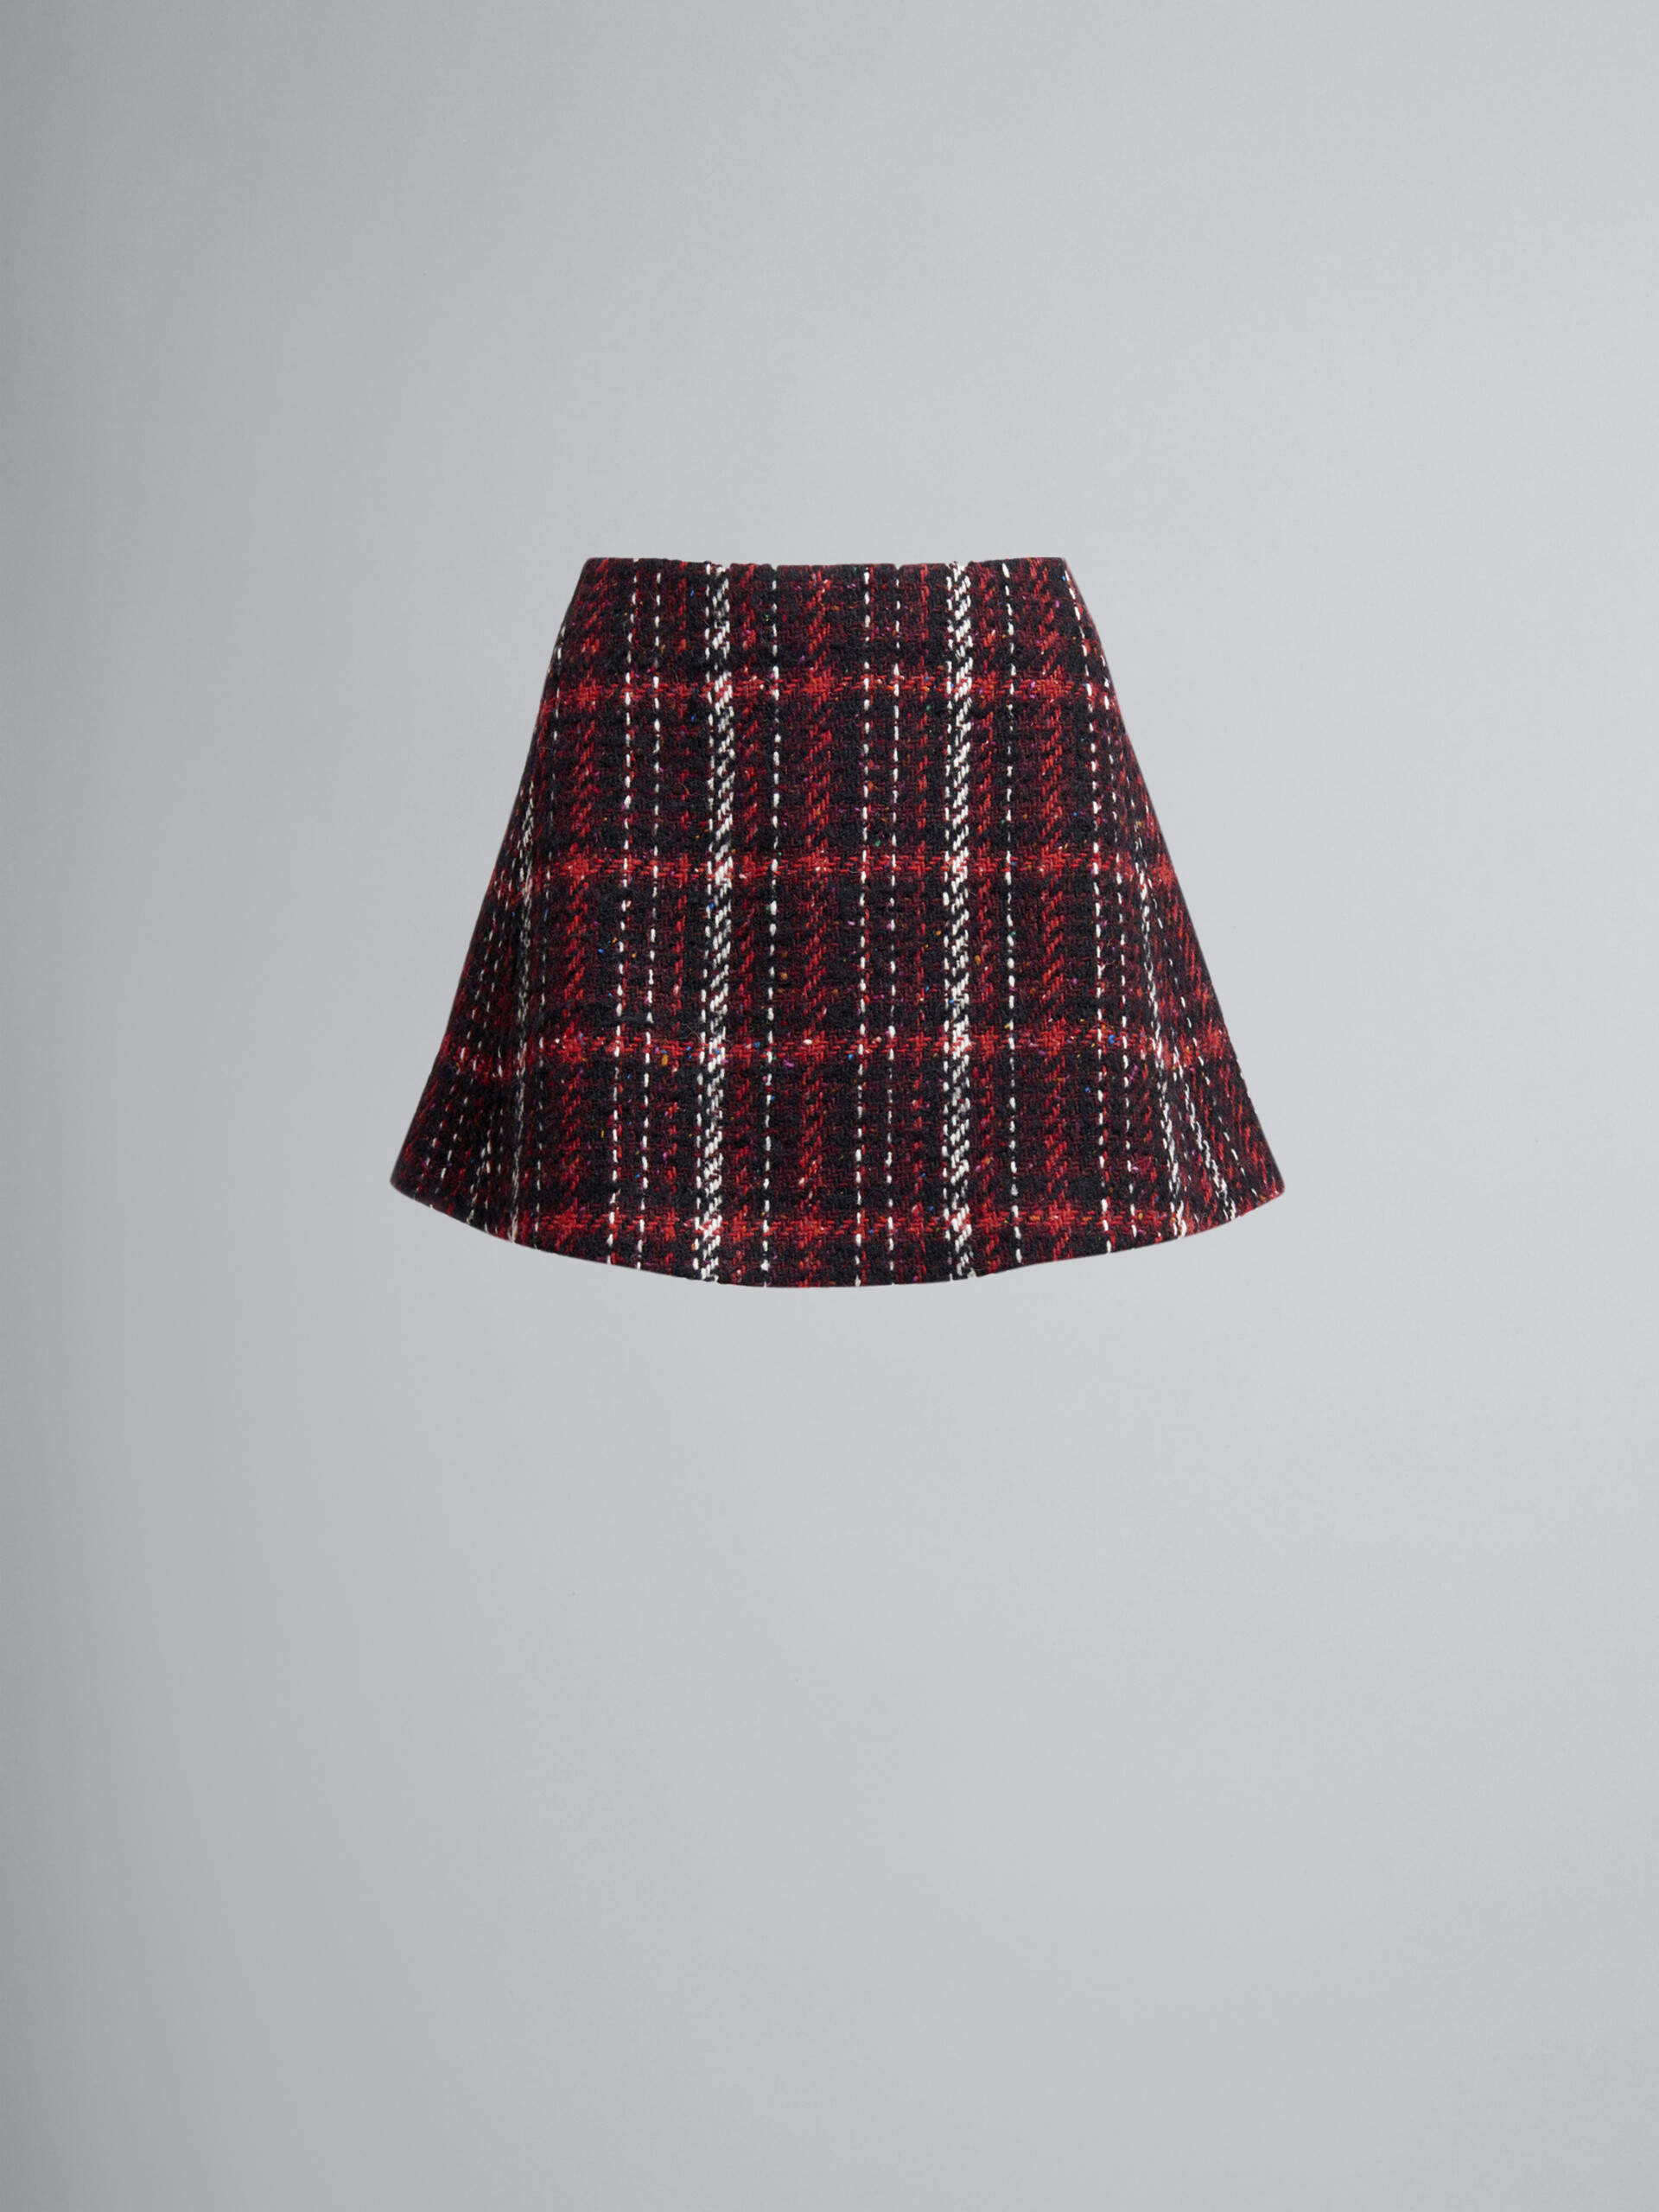 Speckled tweed mini skirt - Skirts - Image 1